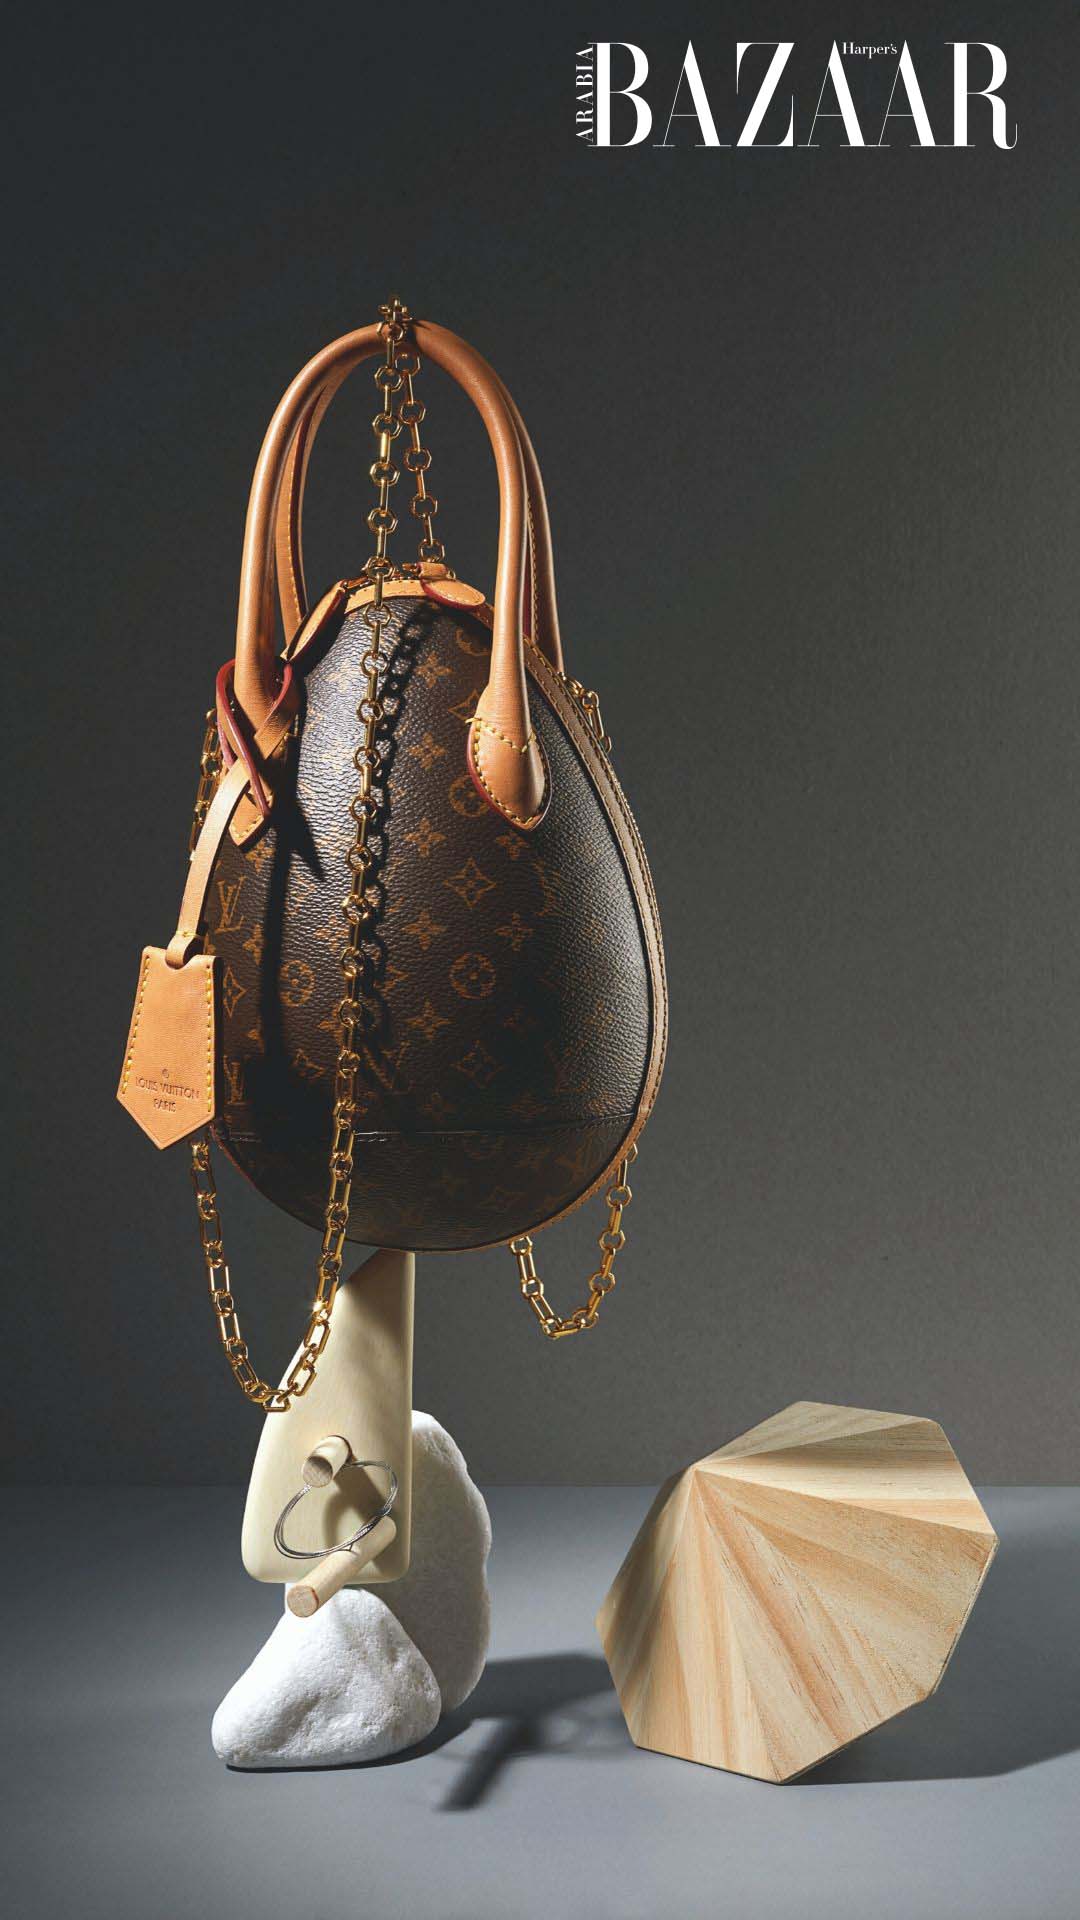 Harper's Bazaar Arabia on Instagram‎: Louis Vuitton's new High